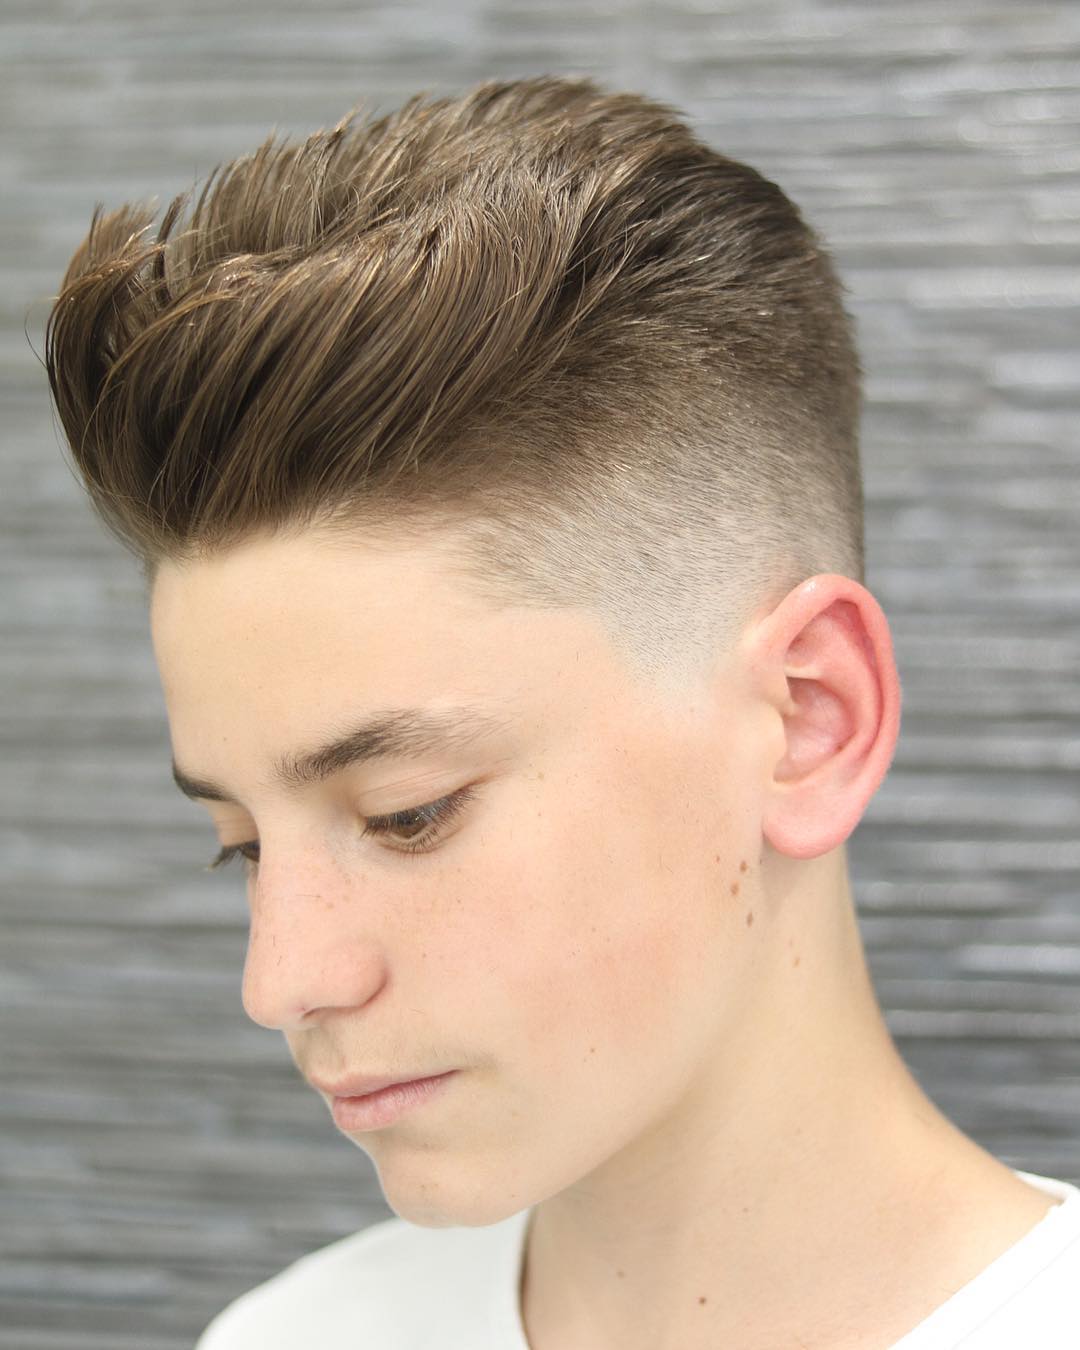 Top 35 Popular Teen Boy Hairstyles Best Teen Boy Haircut For Men 2020